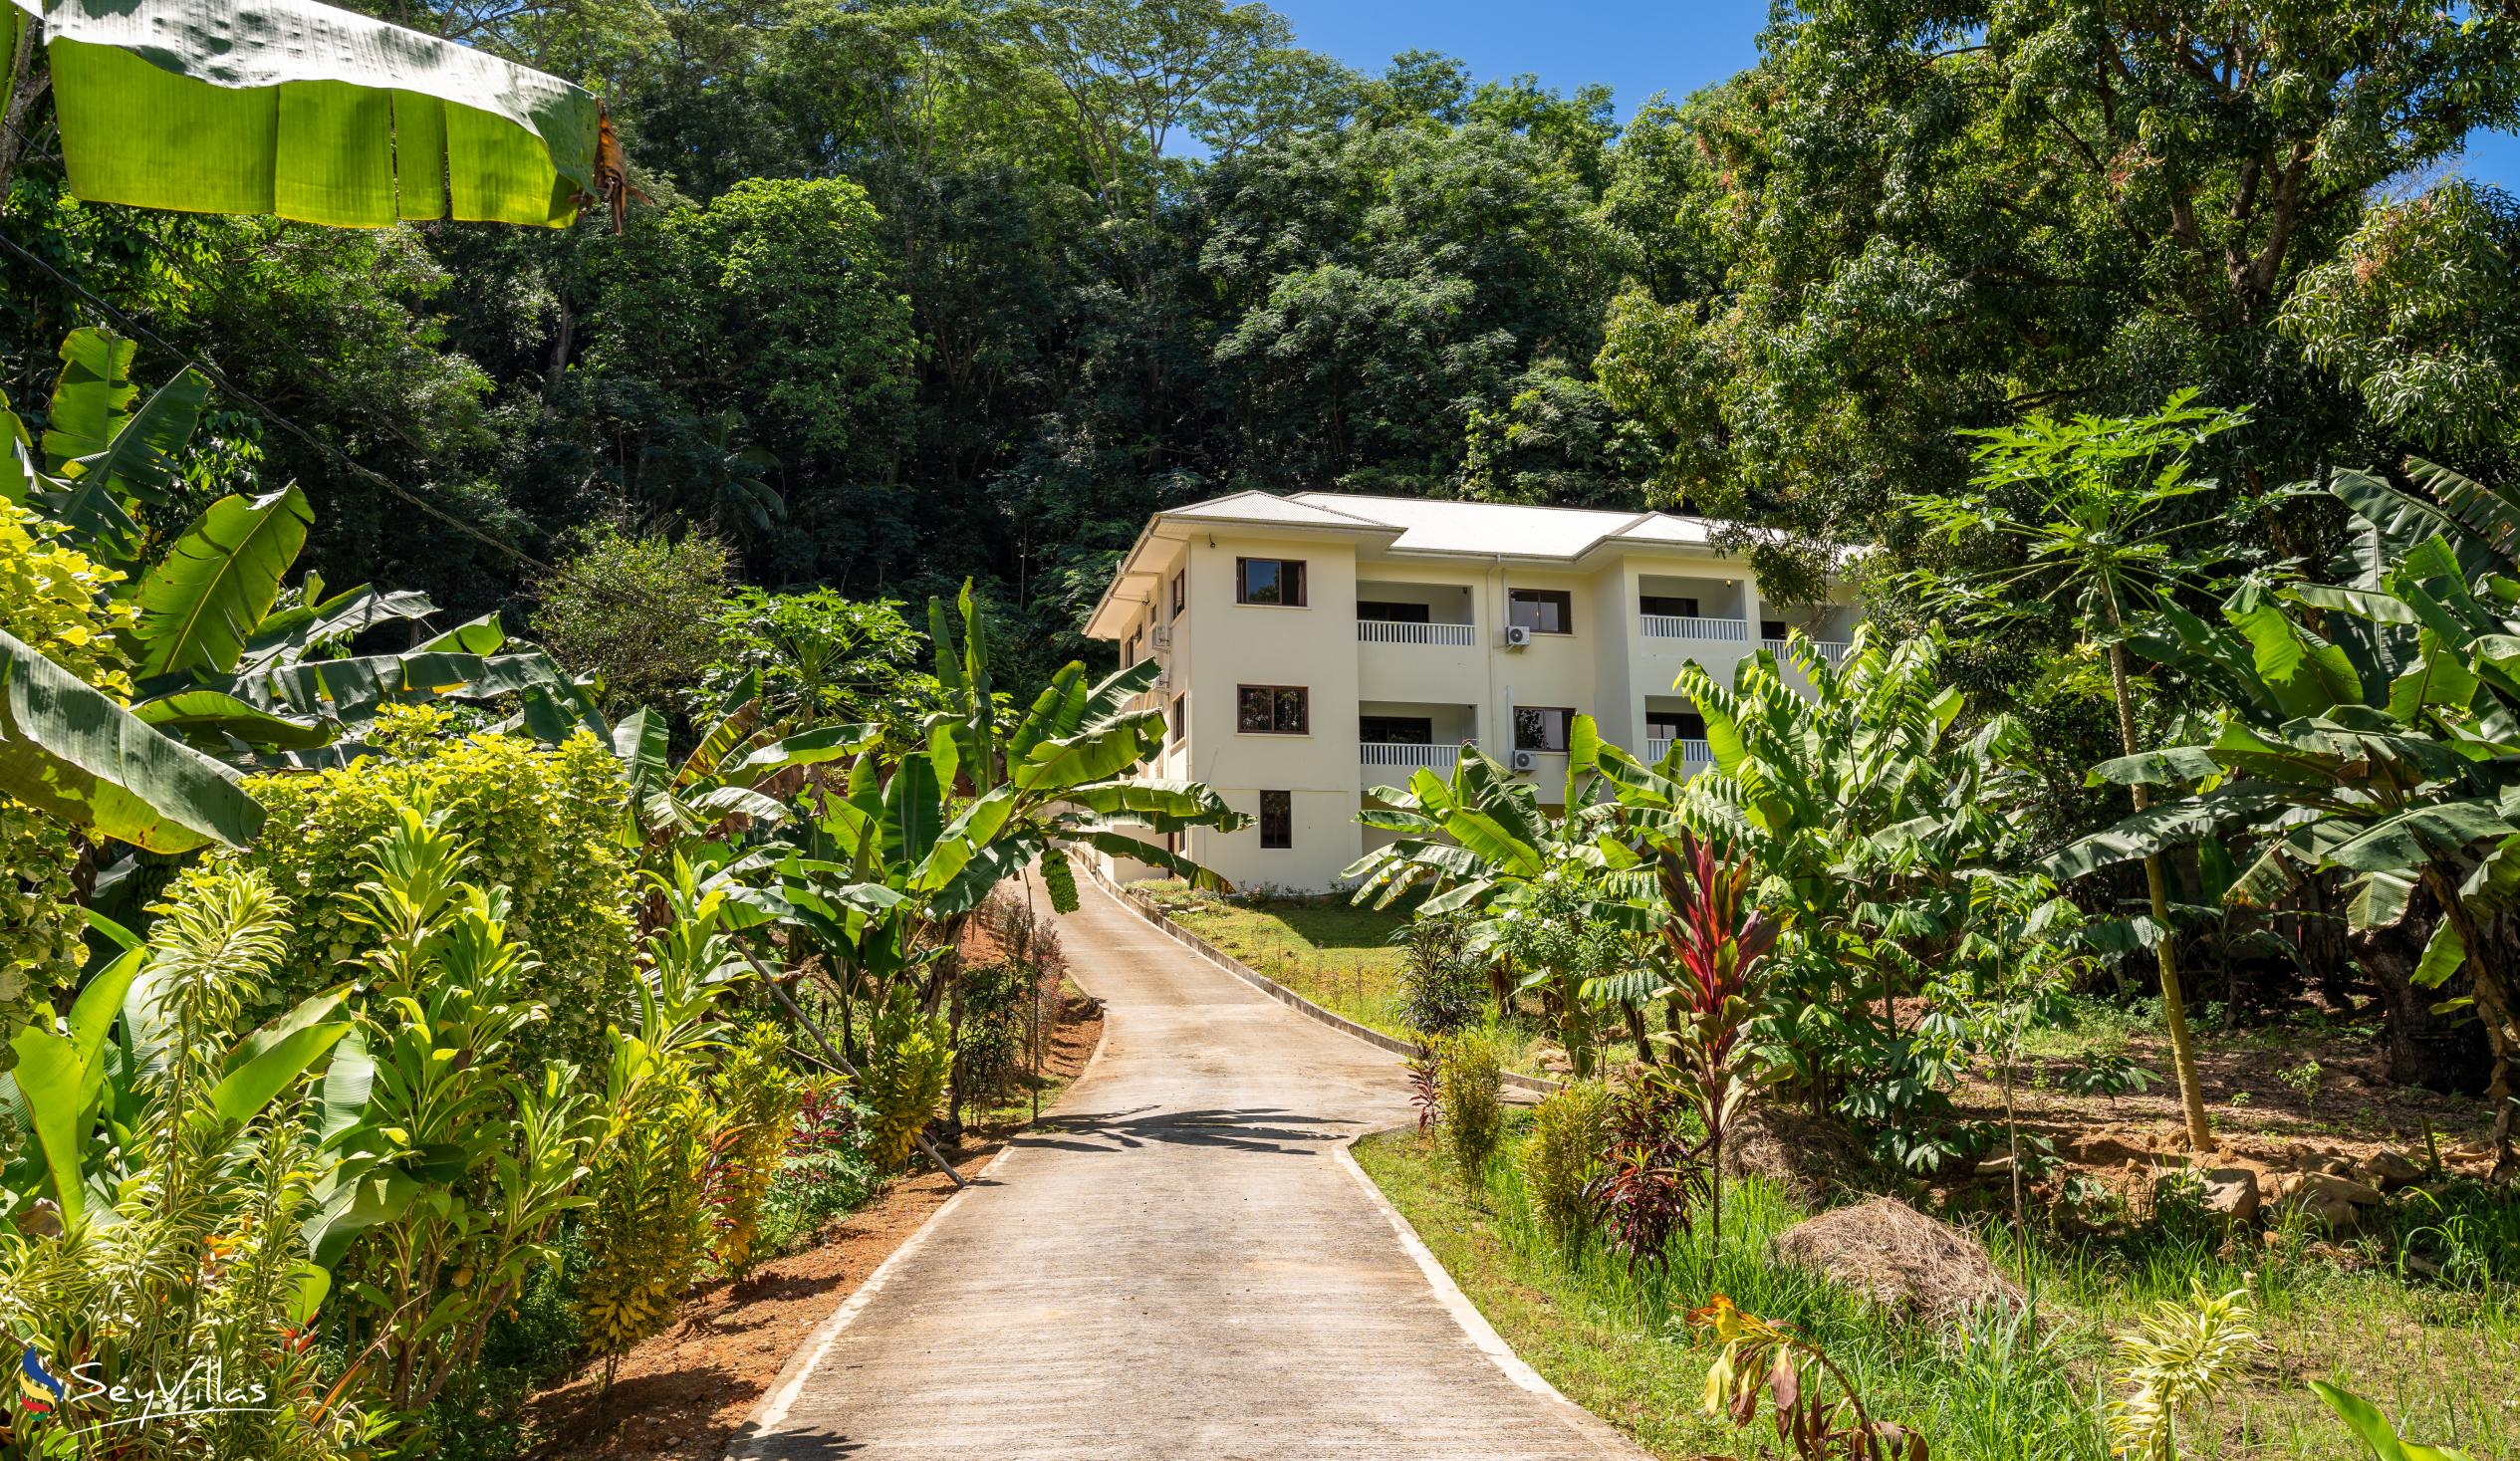 Foto 48: Kanasuk Self Catering Apartments - Aussenbereich - Mahé (Seychellen)